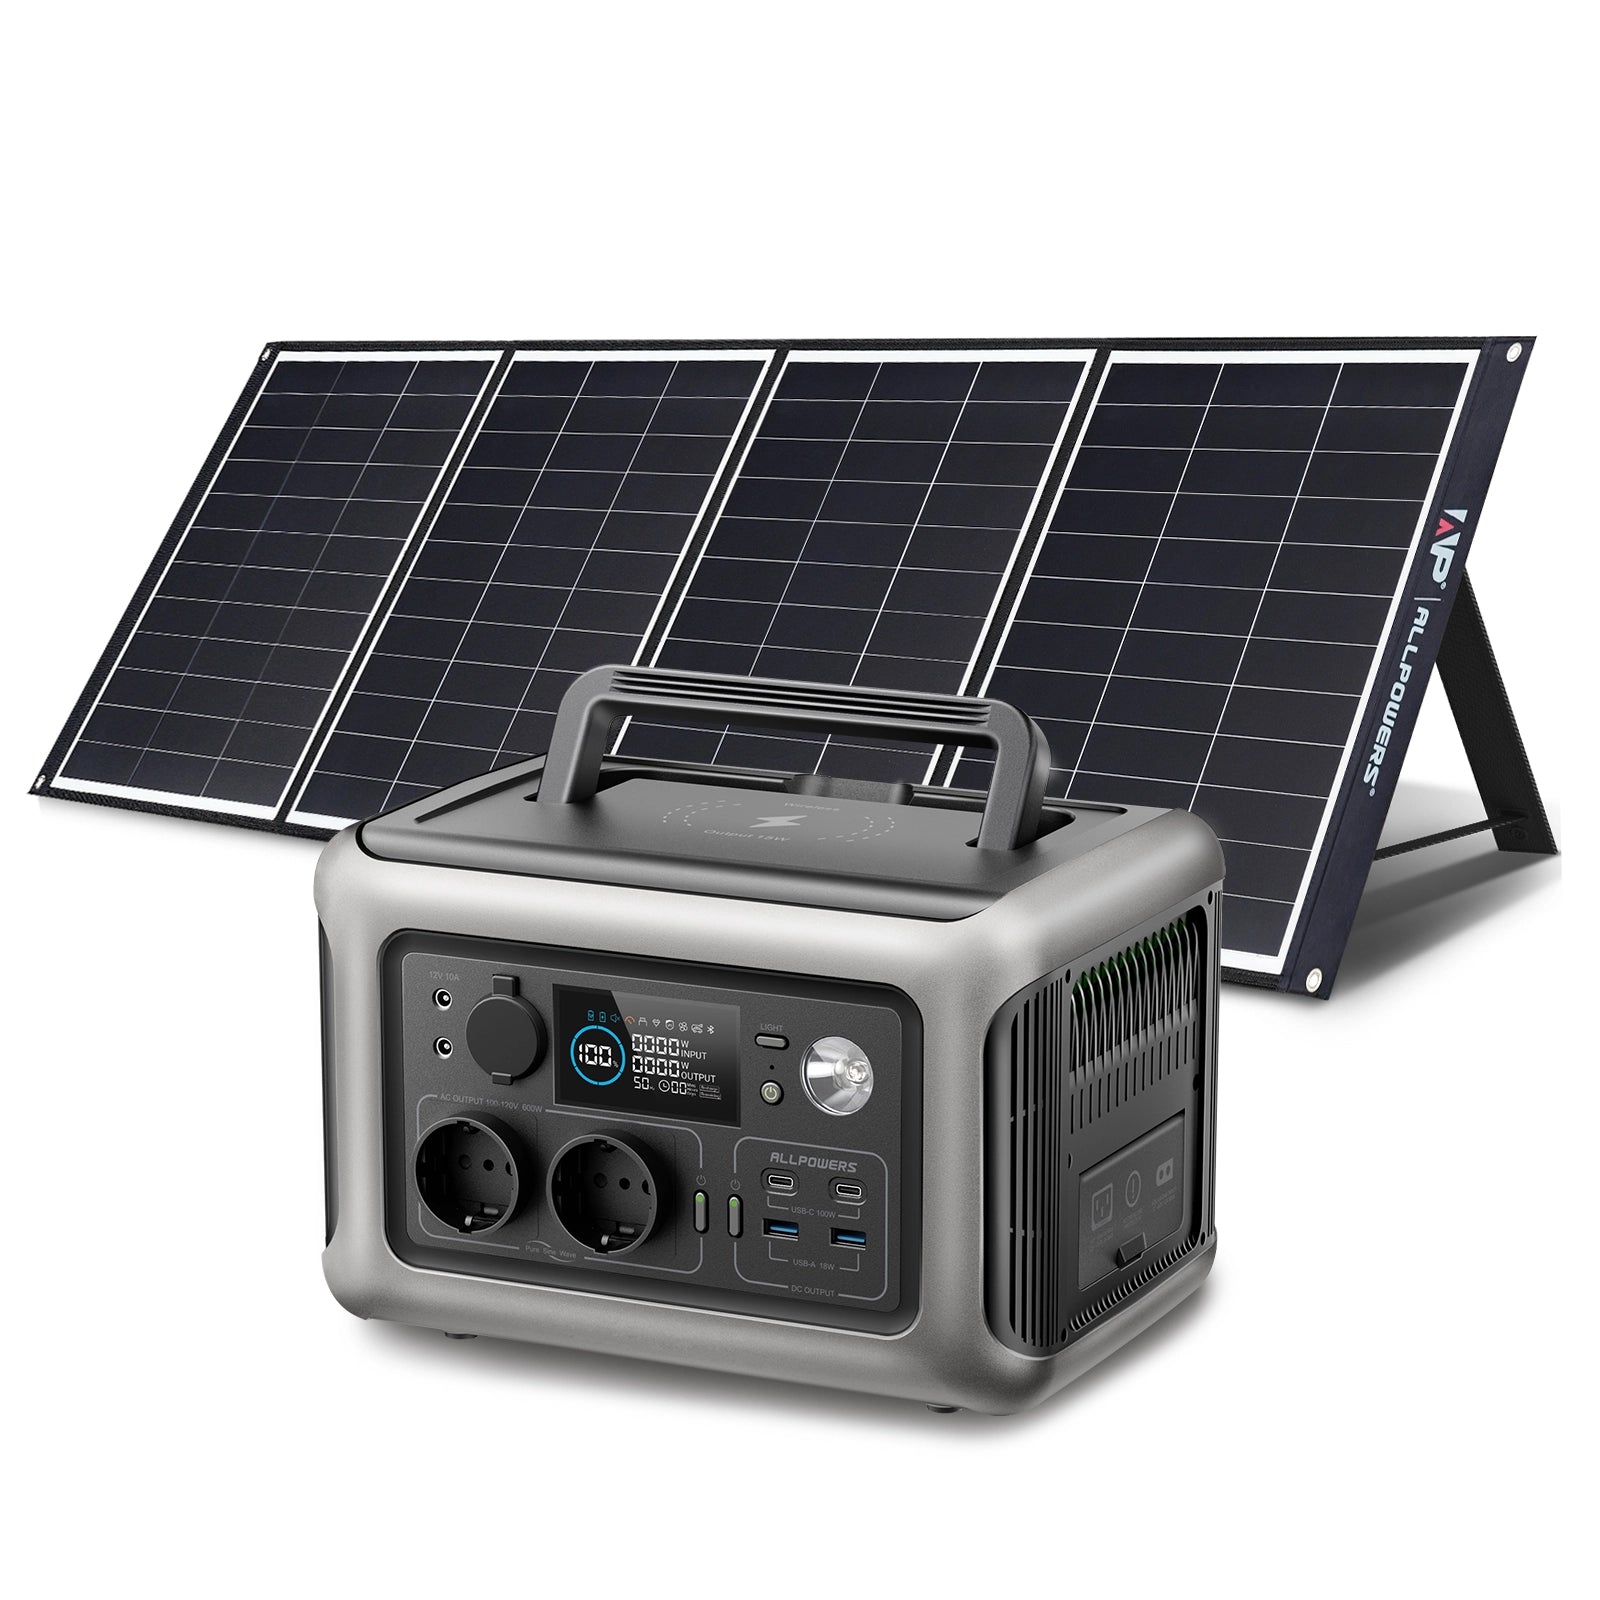 ALLPOWERS Kit Generatore Solare 600W (R600 + SP035 200W Pannello Solare)